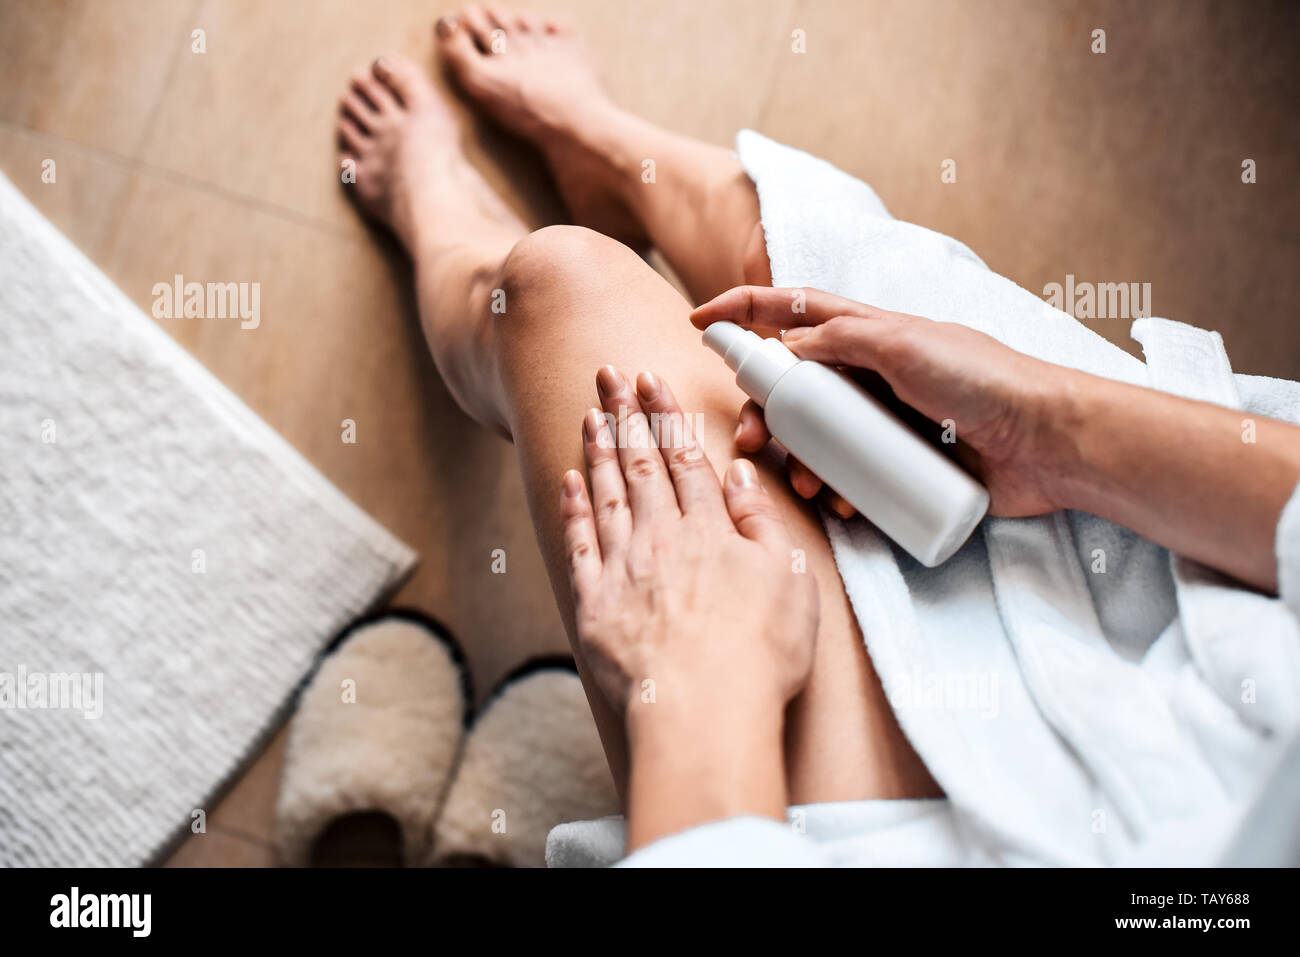 La jeune fille dans la salle de bains met la crème anti-cellulite, de sérum sur les jambes et le corps. Concept de soins du corps. Banque D'Images